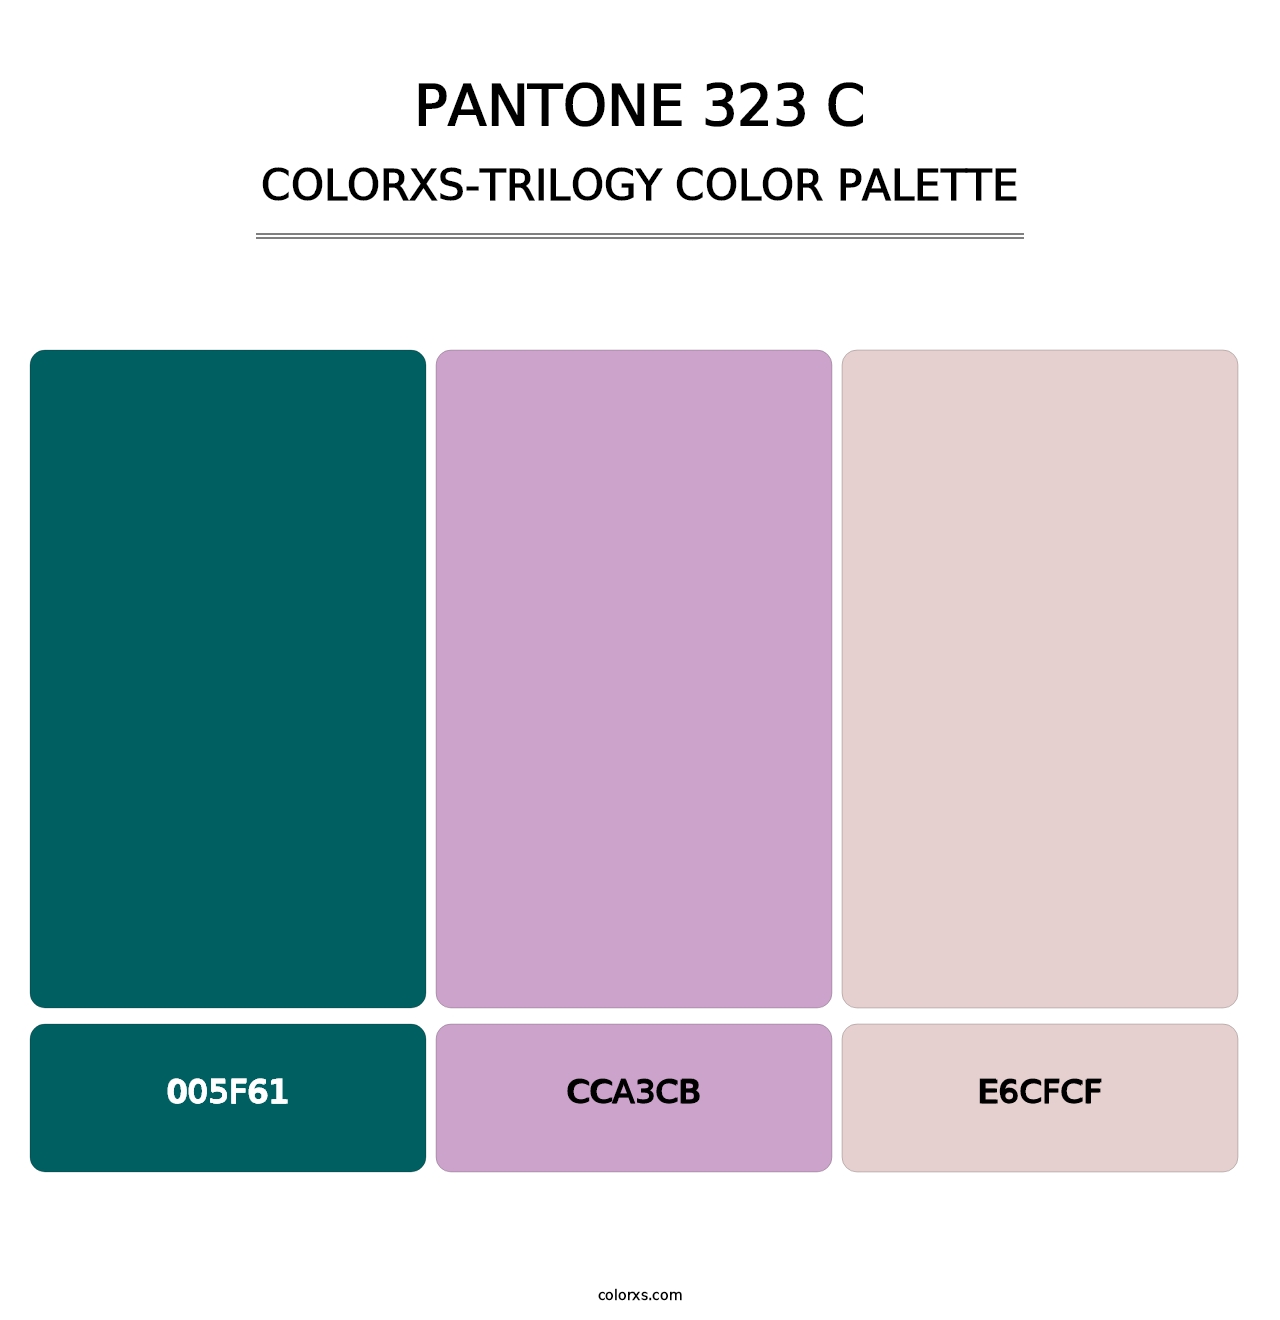 PANTONE 323 C - Colorxs Trilogy Palette